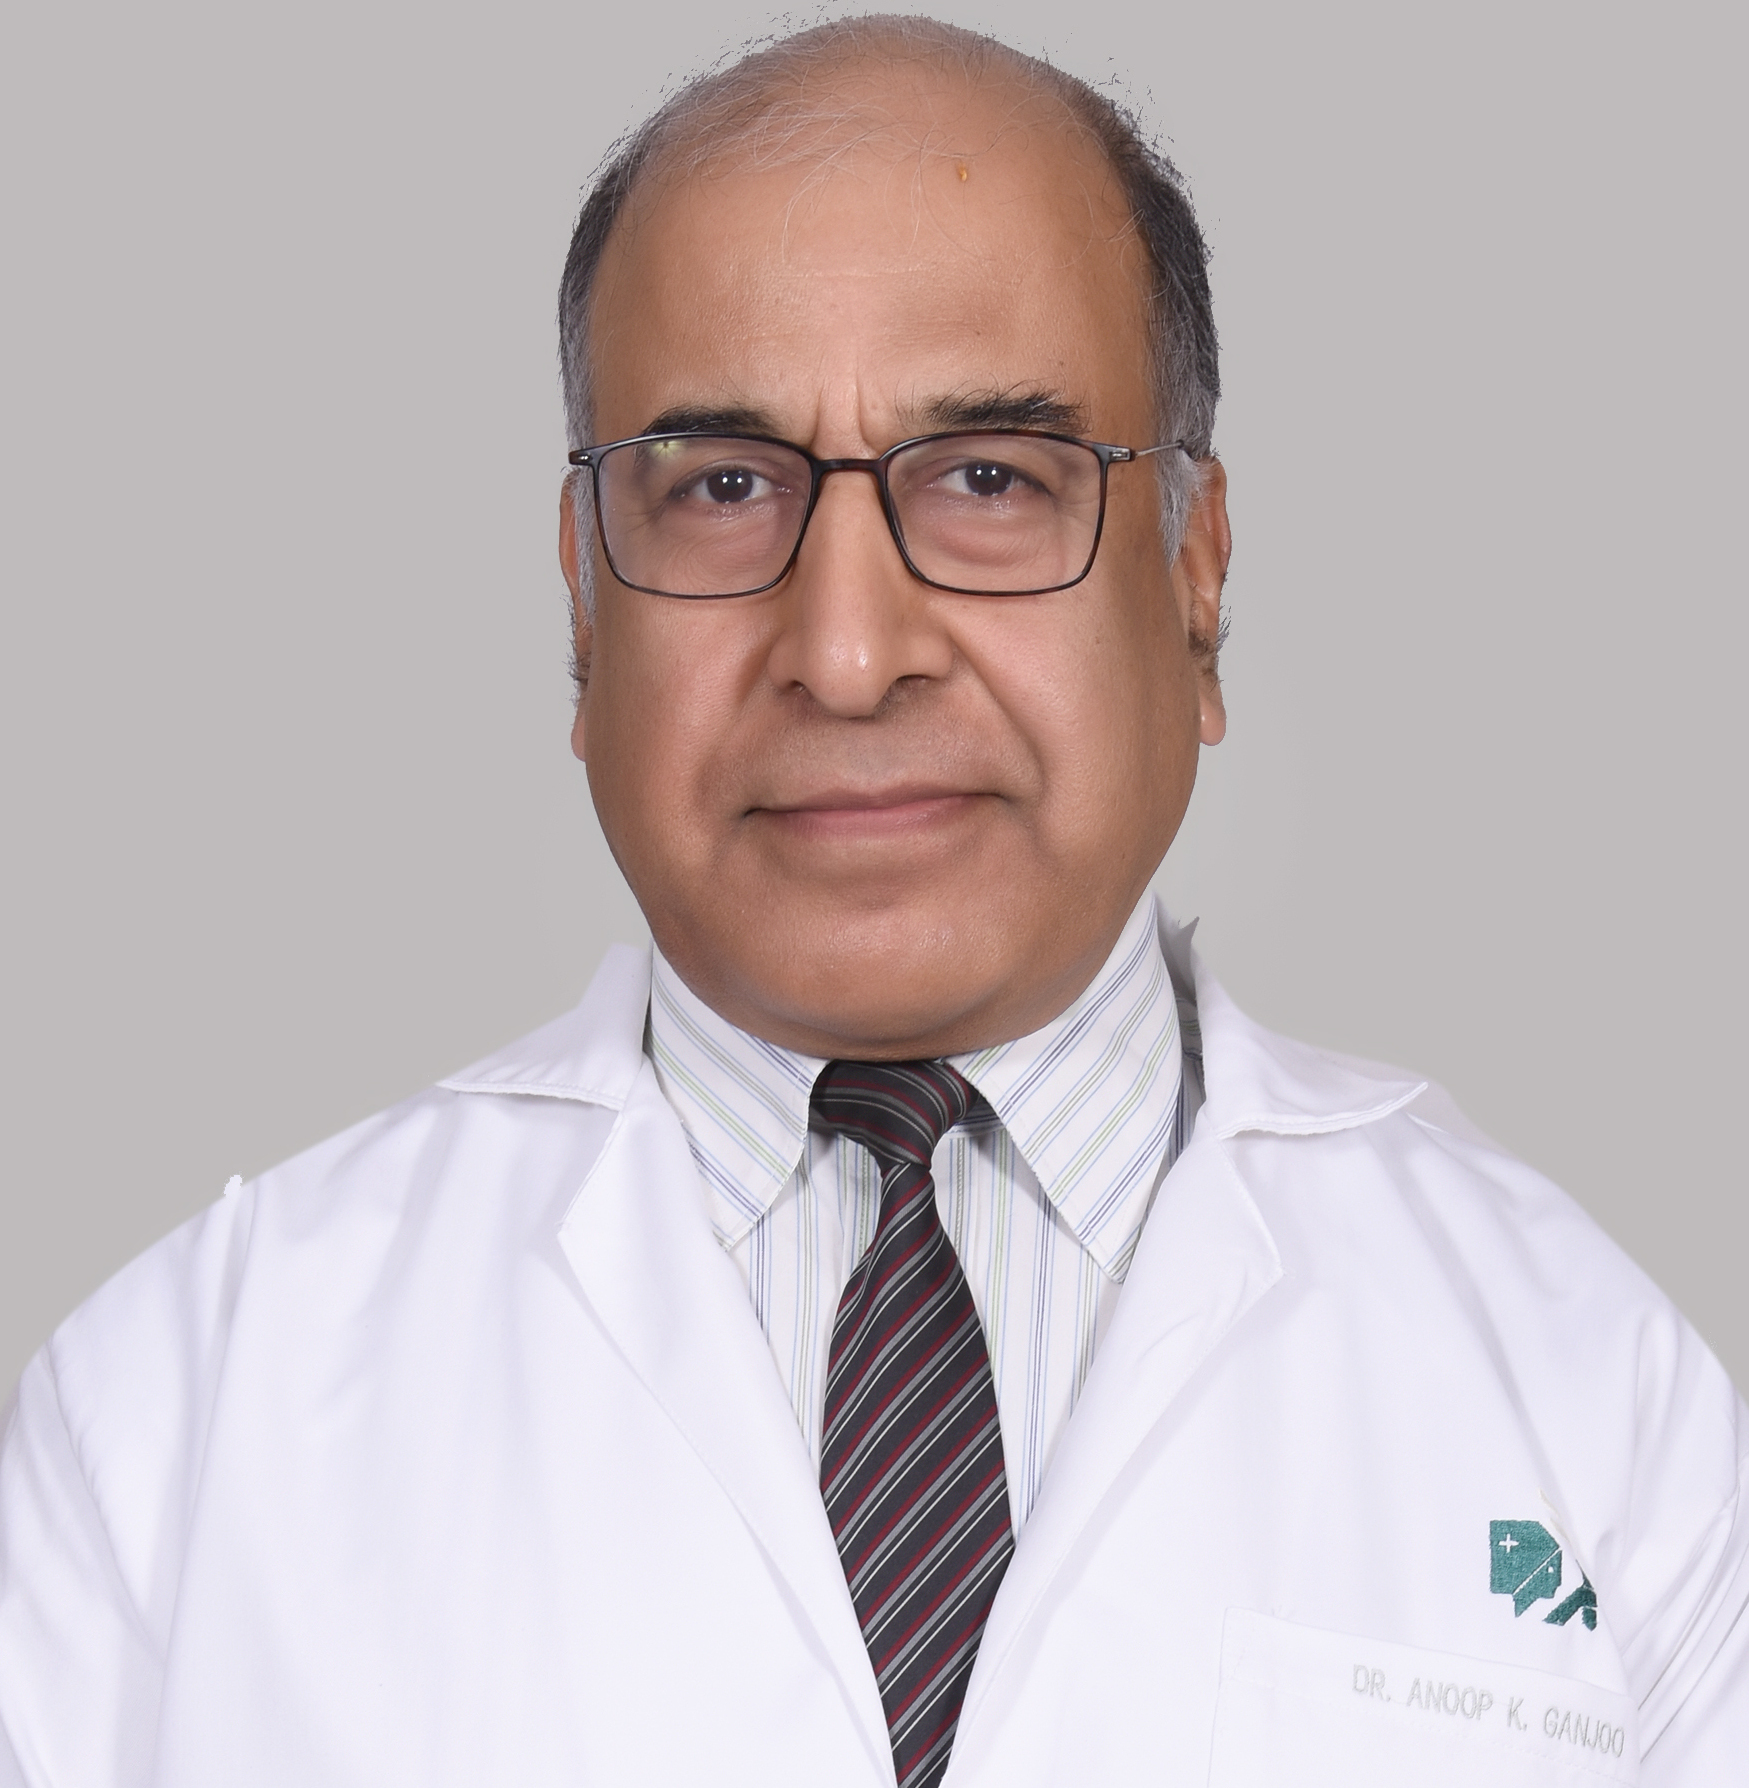 consulter dr anoop k ganjoo meilleur cardiologue chirurgien cardio thoracique apollo hospital delhi